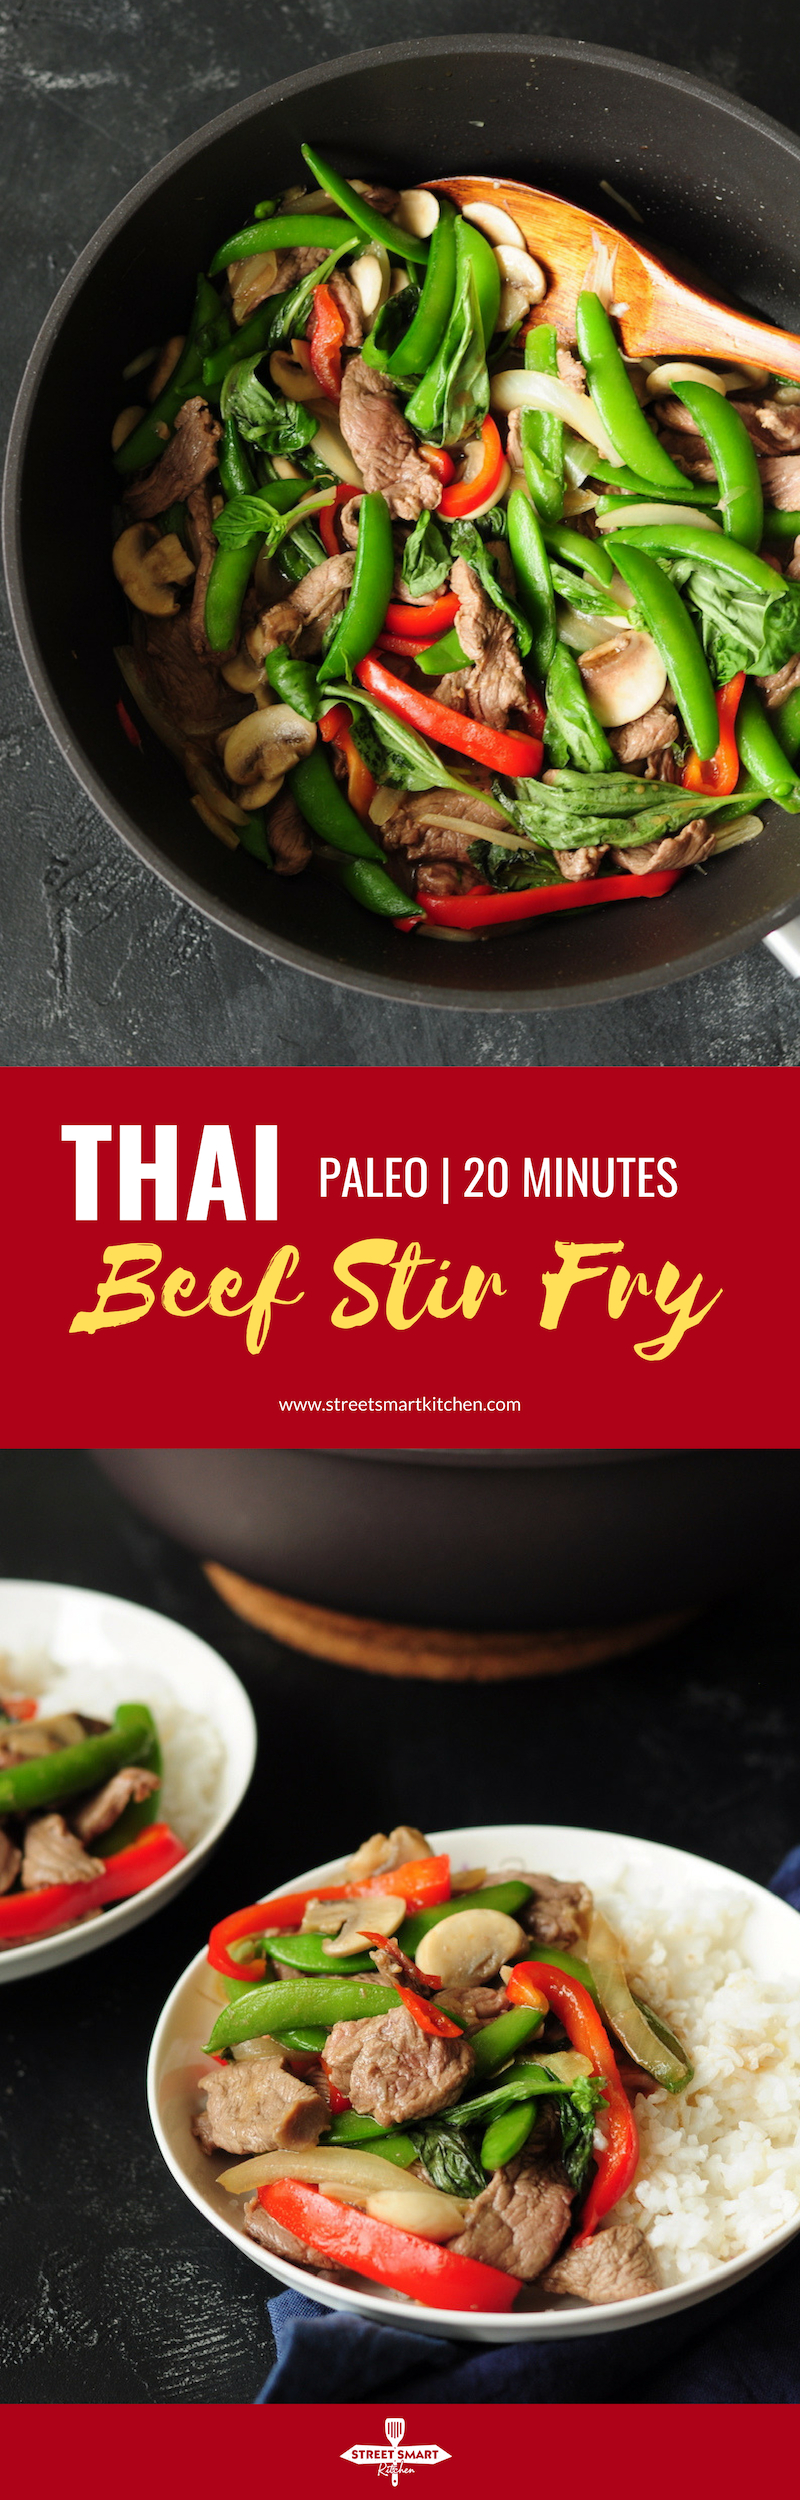 Thai Beef Stir Fry - StreetSmart Kitchen